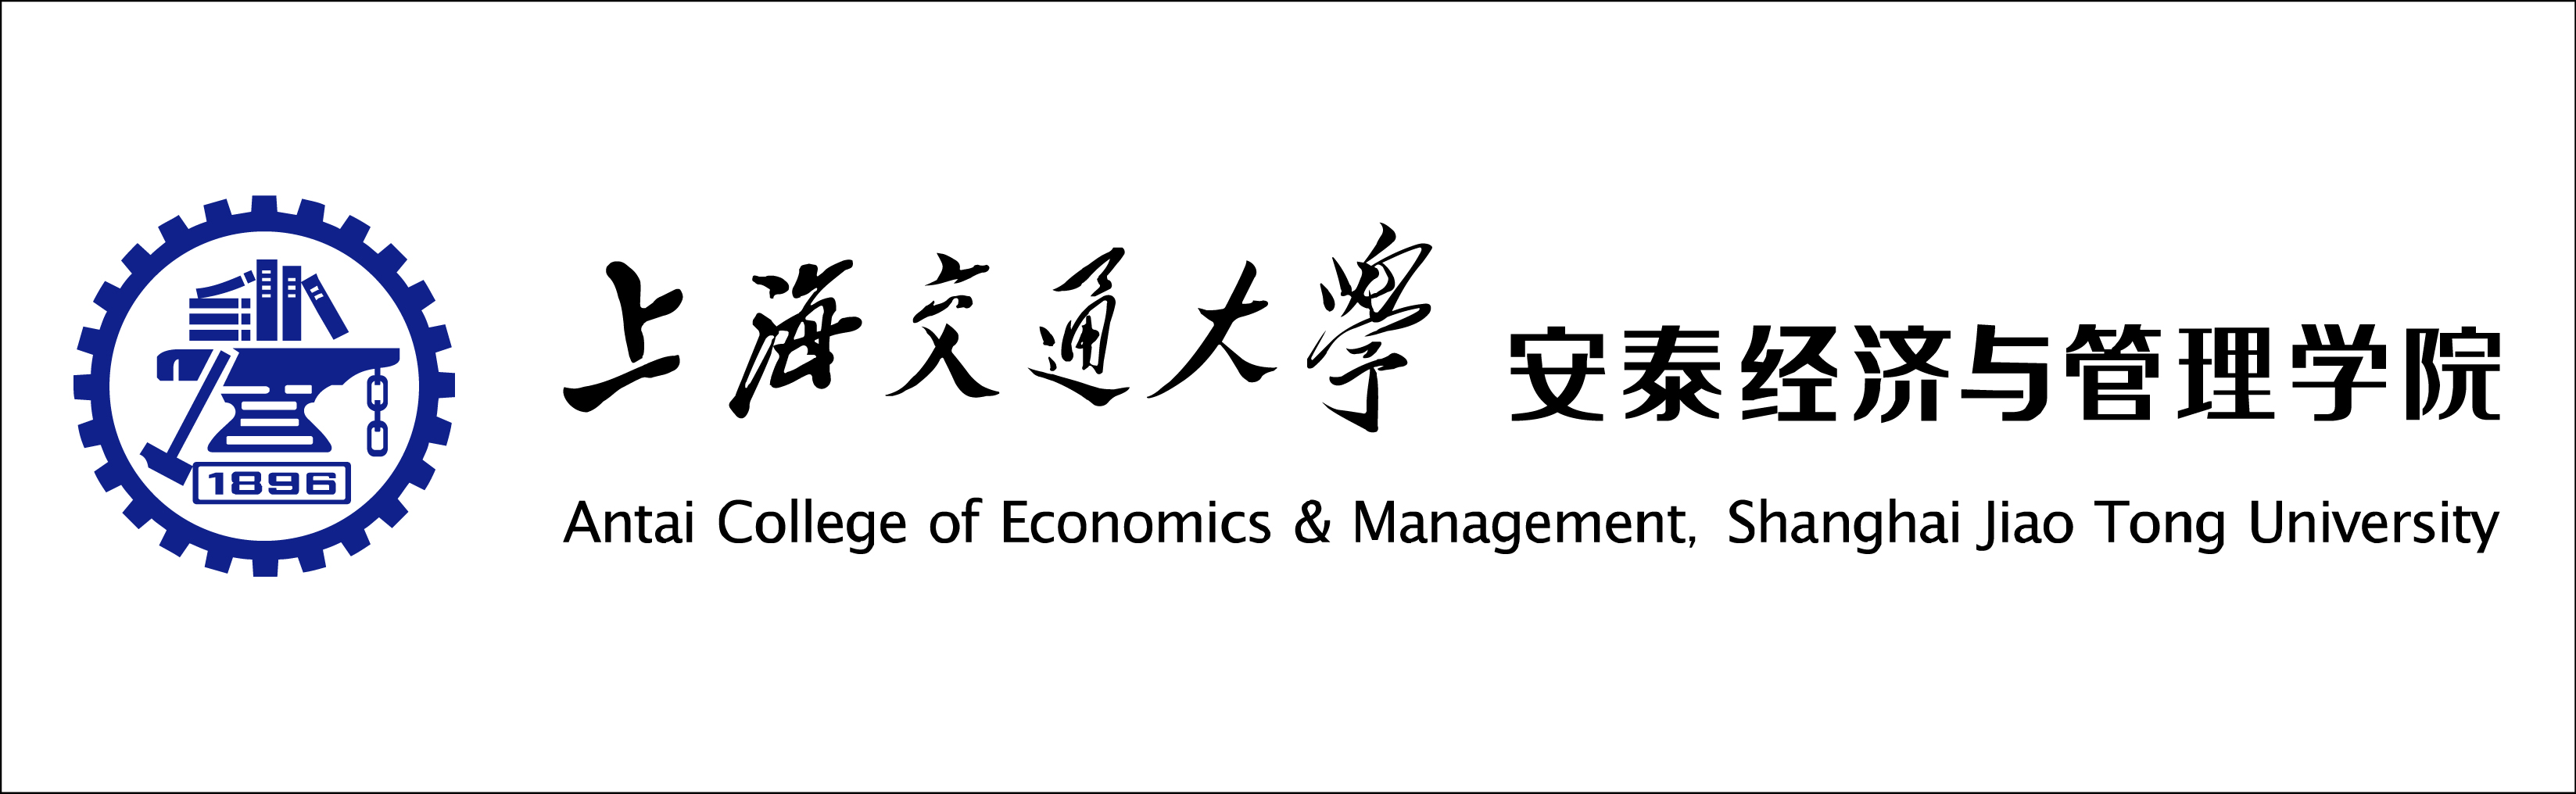 Logo of Shanghai Jiao Tong University